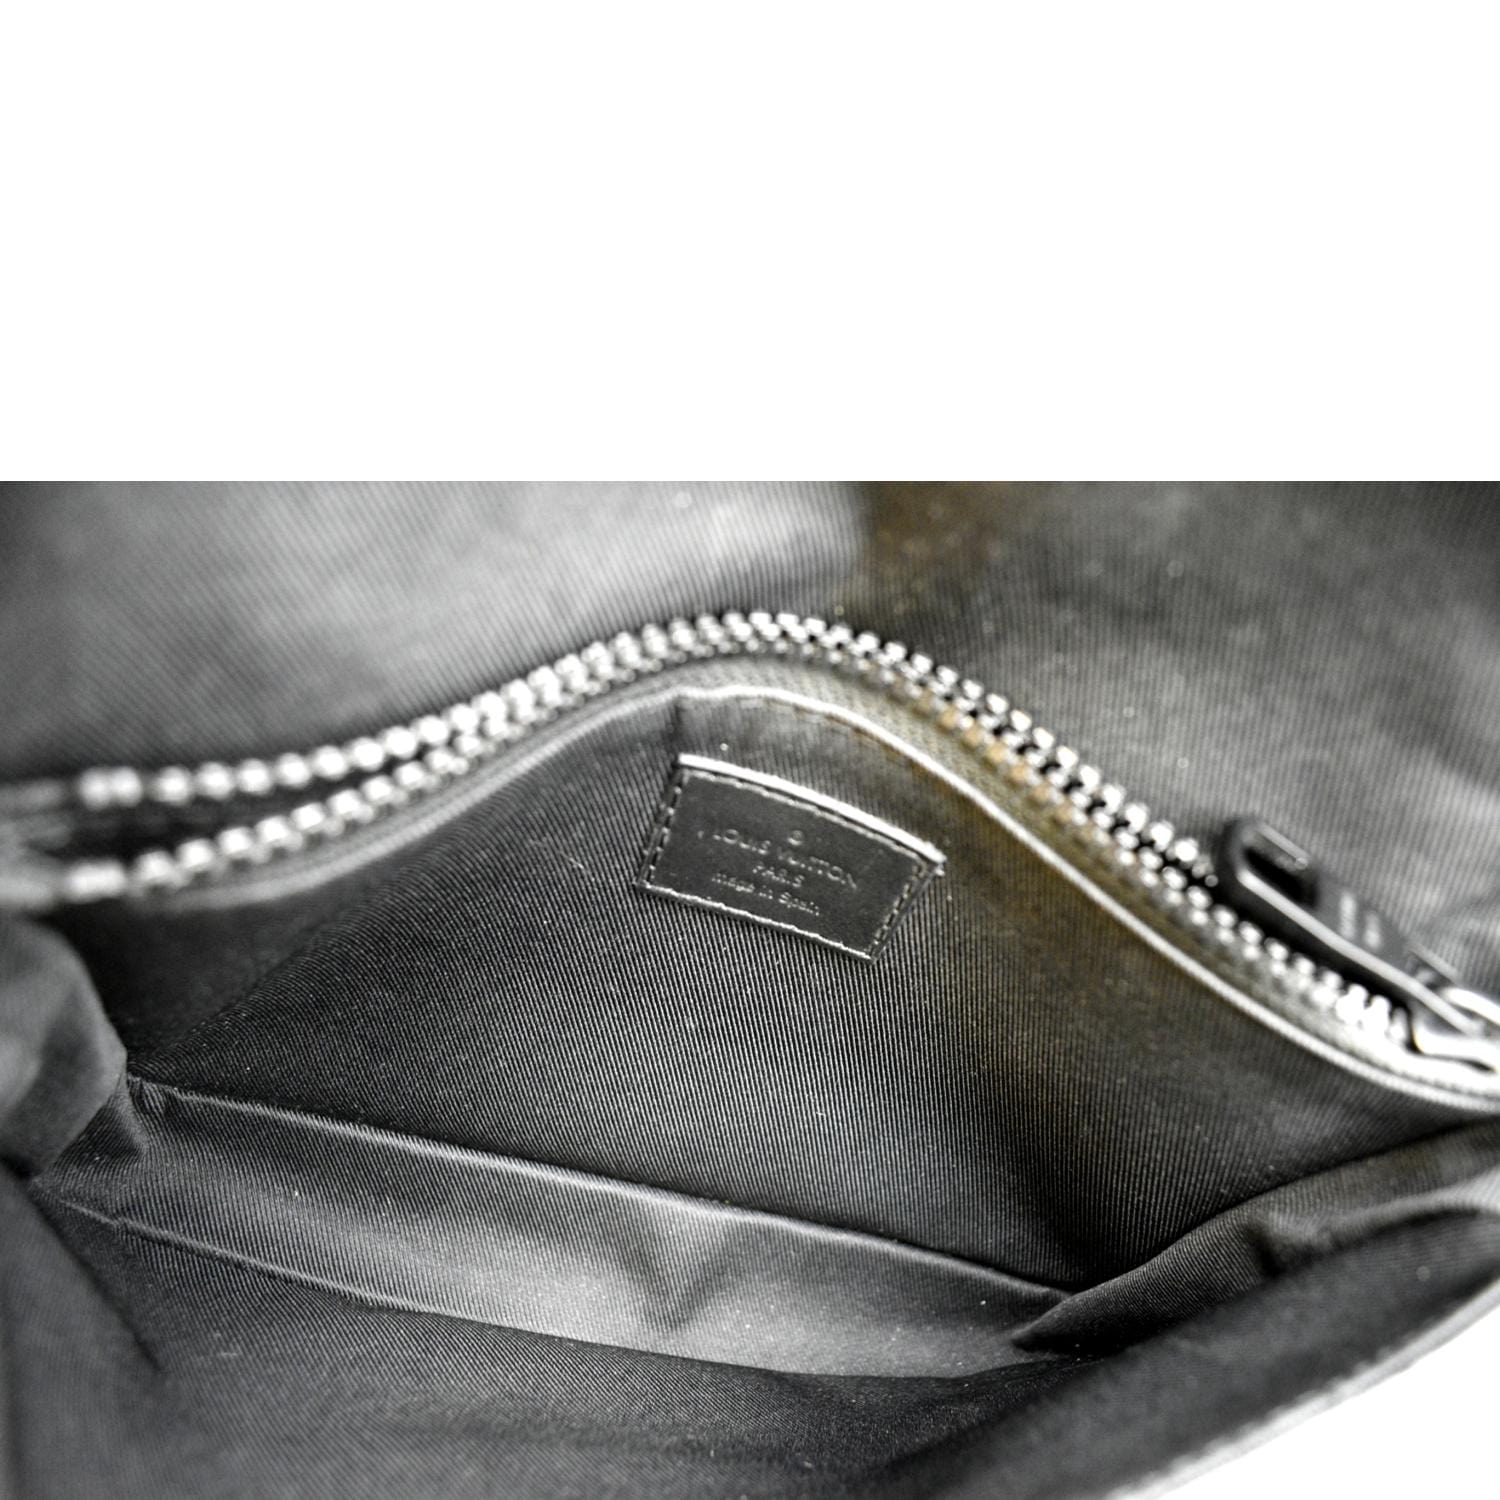 Louis Vuitton DAMIER S Lock Sling Bag (M58487)